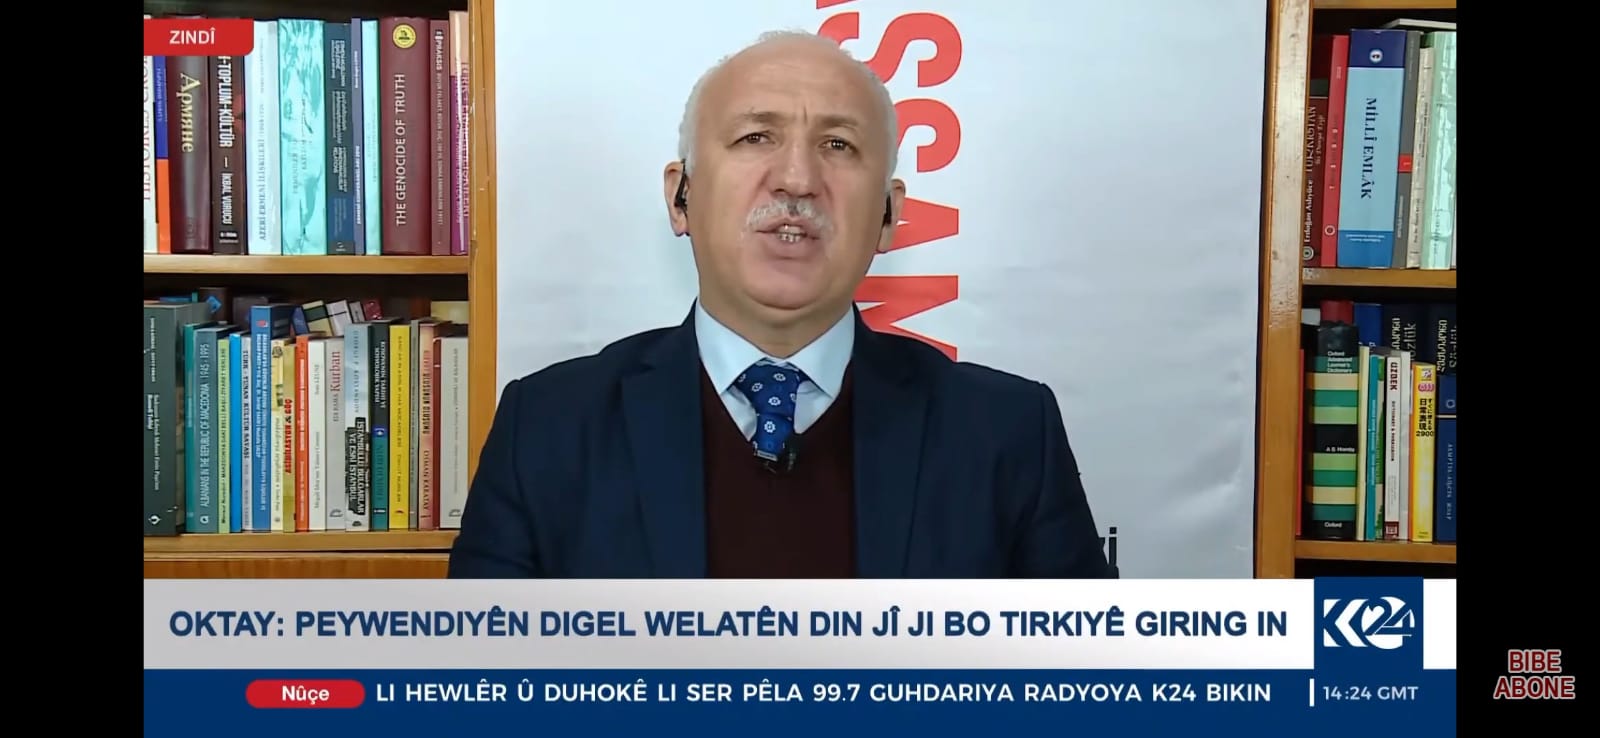 Hasan Oktay K 24 Tv ye AB yaptırım kararları ile ilgili açıklama yaptı